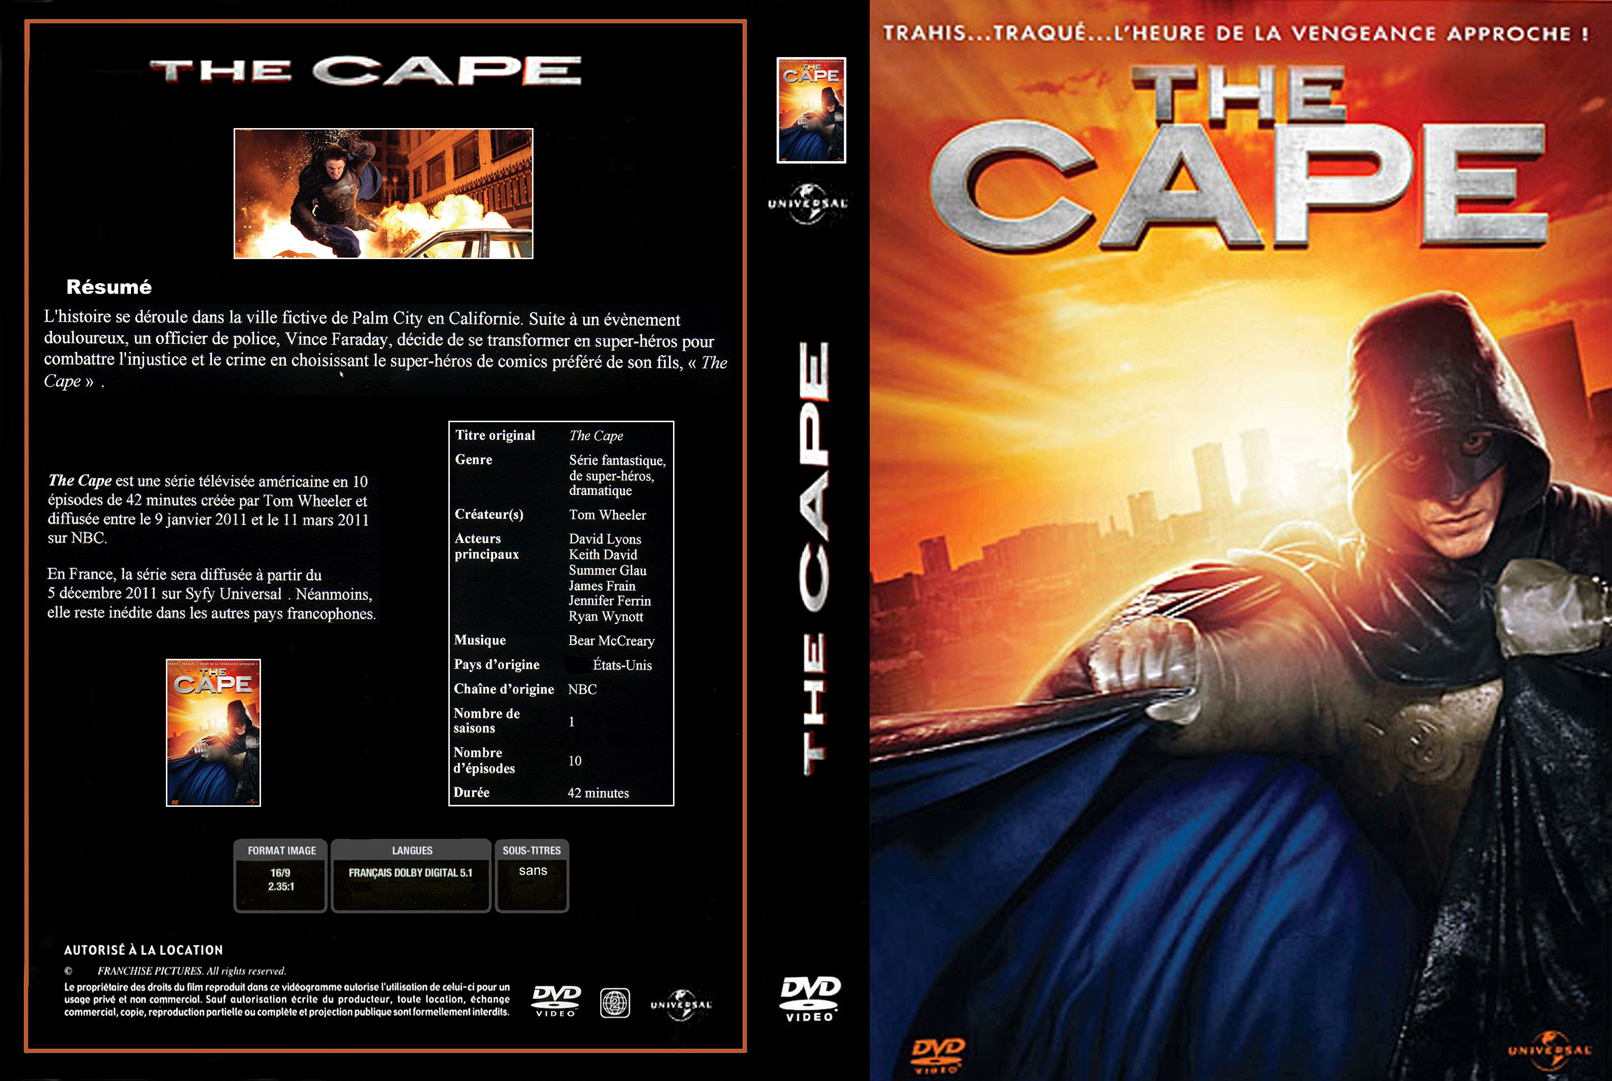 Jaquette DVD The cape La srie custom